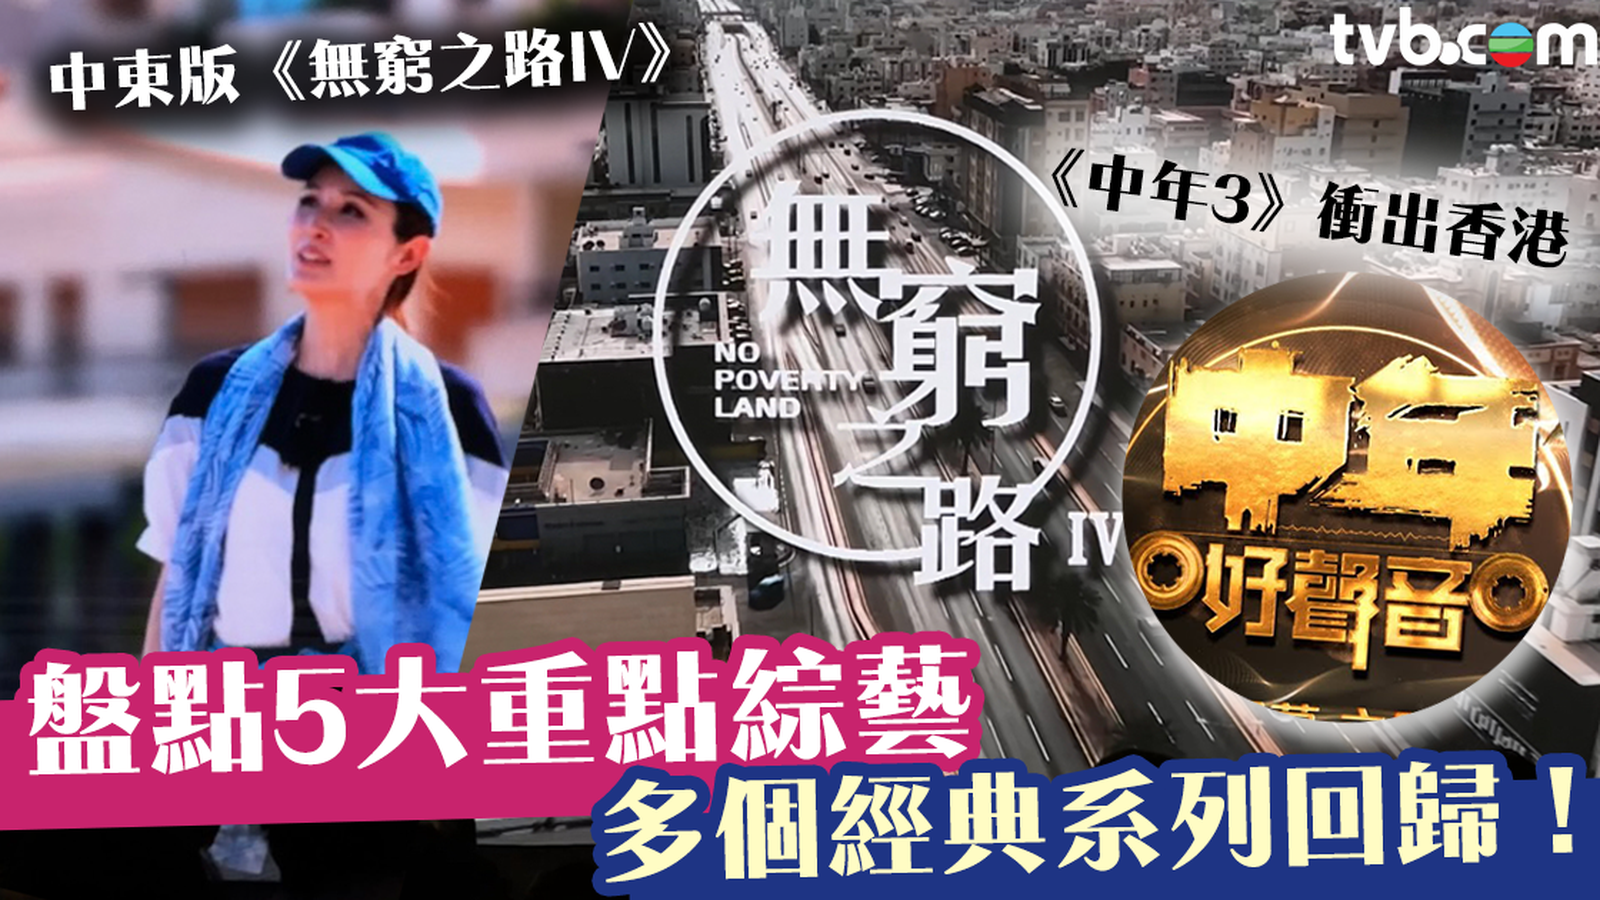 你好TVB｜盤點5大重點綜藝 中東版《無窮之路IV》、《中年3》衝出香港 《無綫藝員訓練班》全新玩法